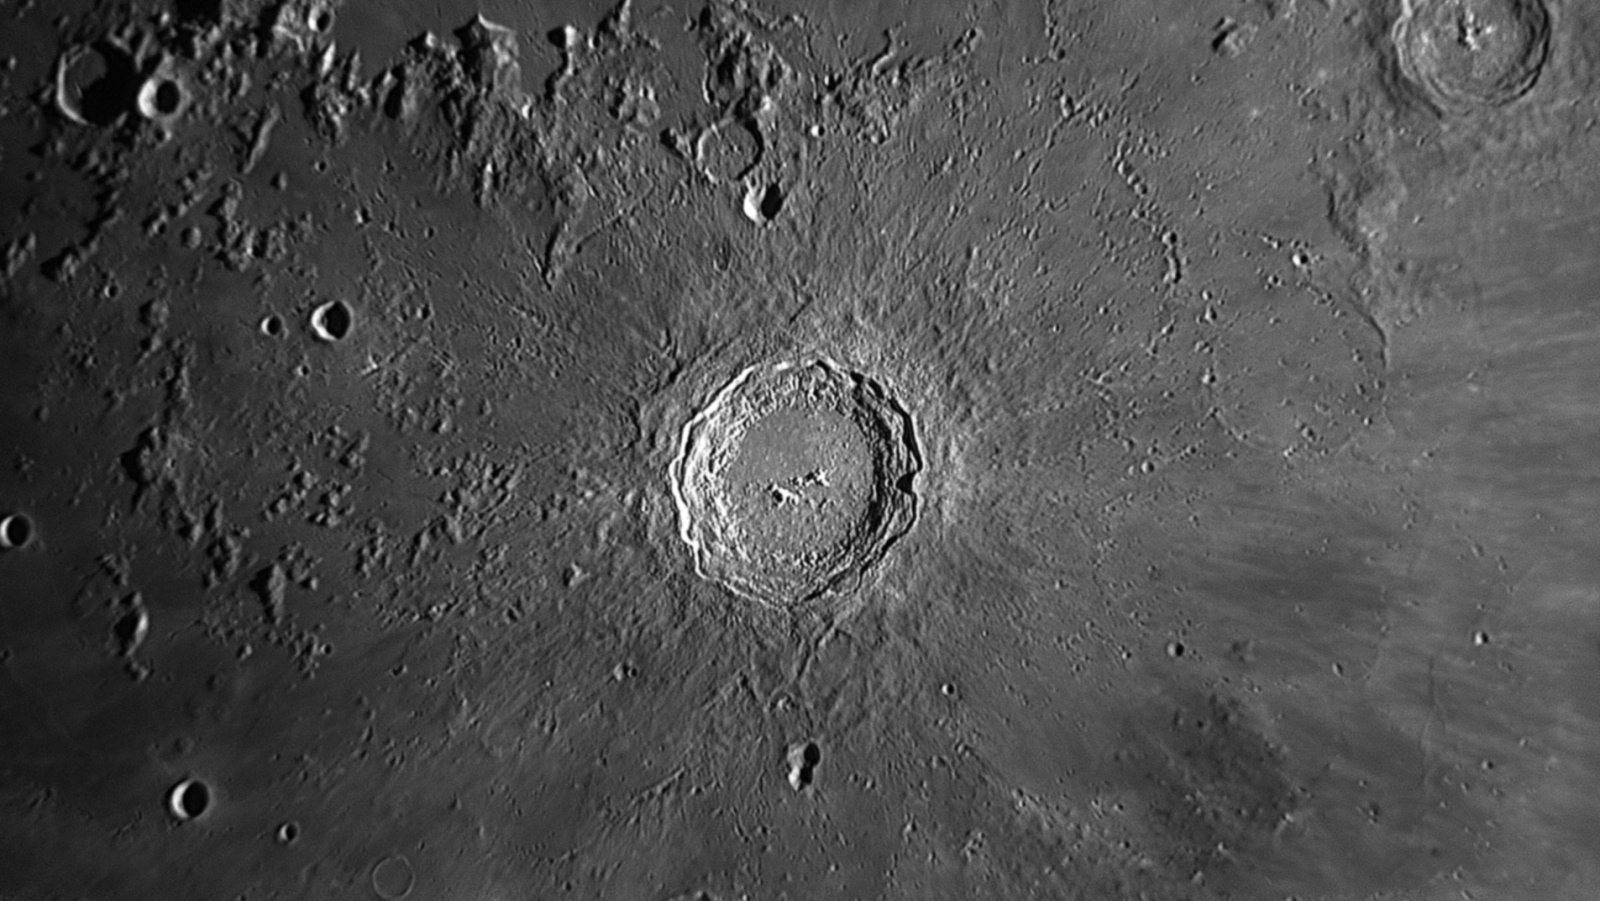 2020-04-03-1958_7-R-Copernicus.thumb.jpg.08a05c4f0edf40d0d6ab5aac39ab2e94.jpg